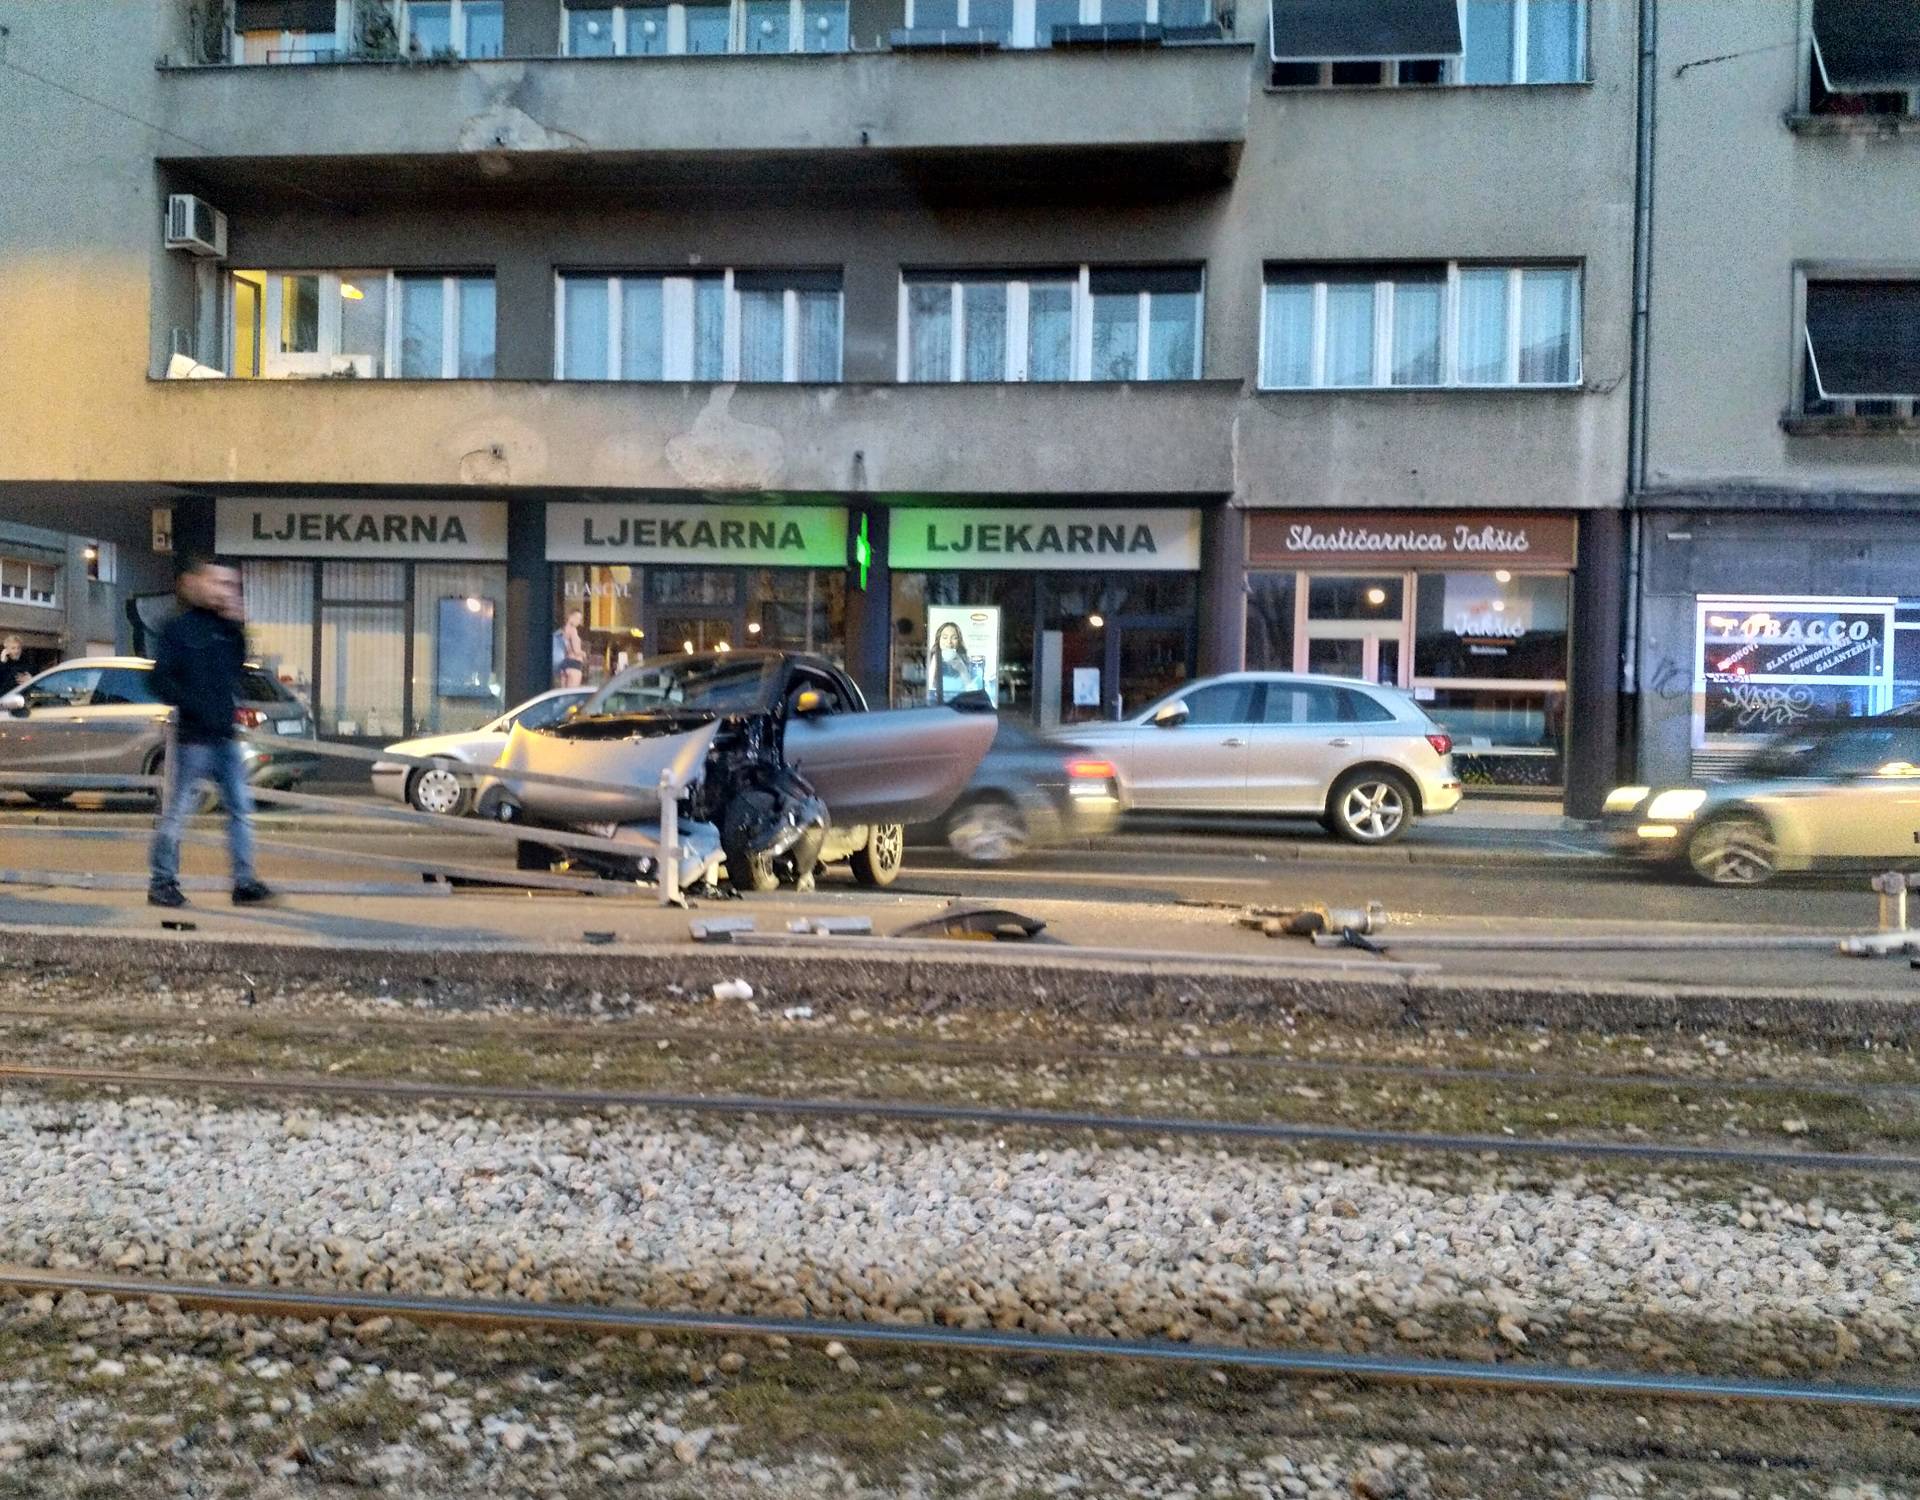 Sudar u Zagrebu: Smart je smrskan, uništili su i stanicu